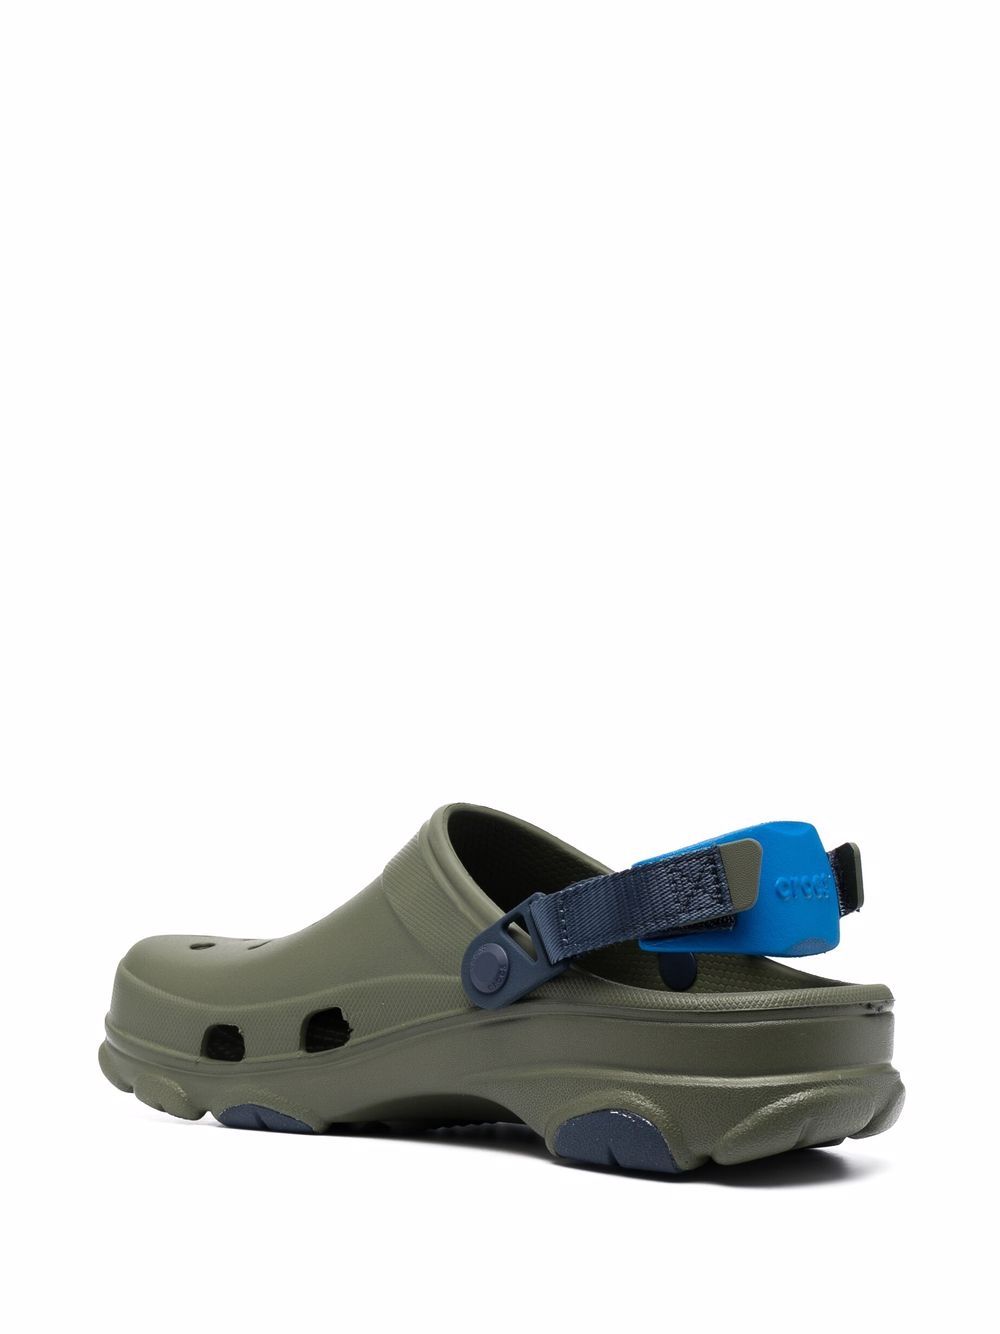 фото Crocs сандалии classic с ремешком на пятке